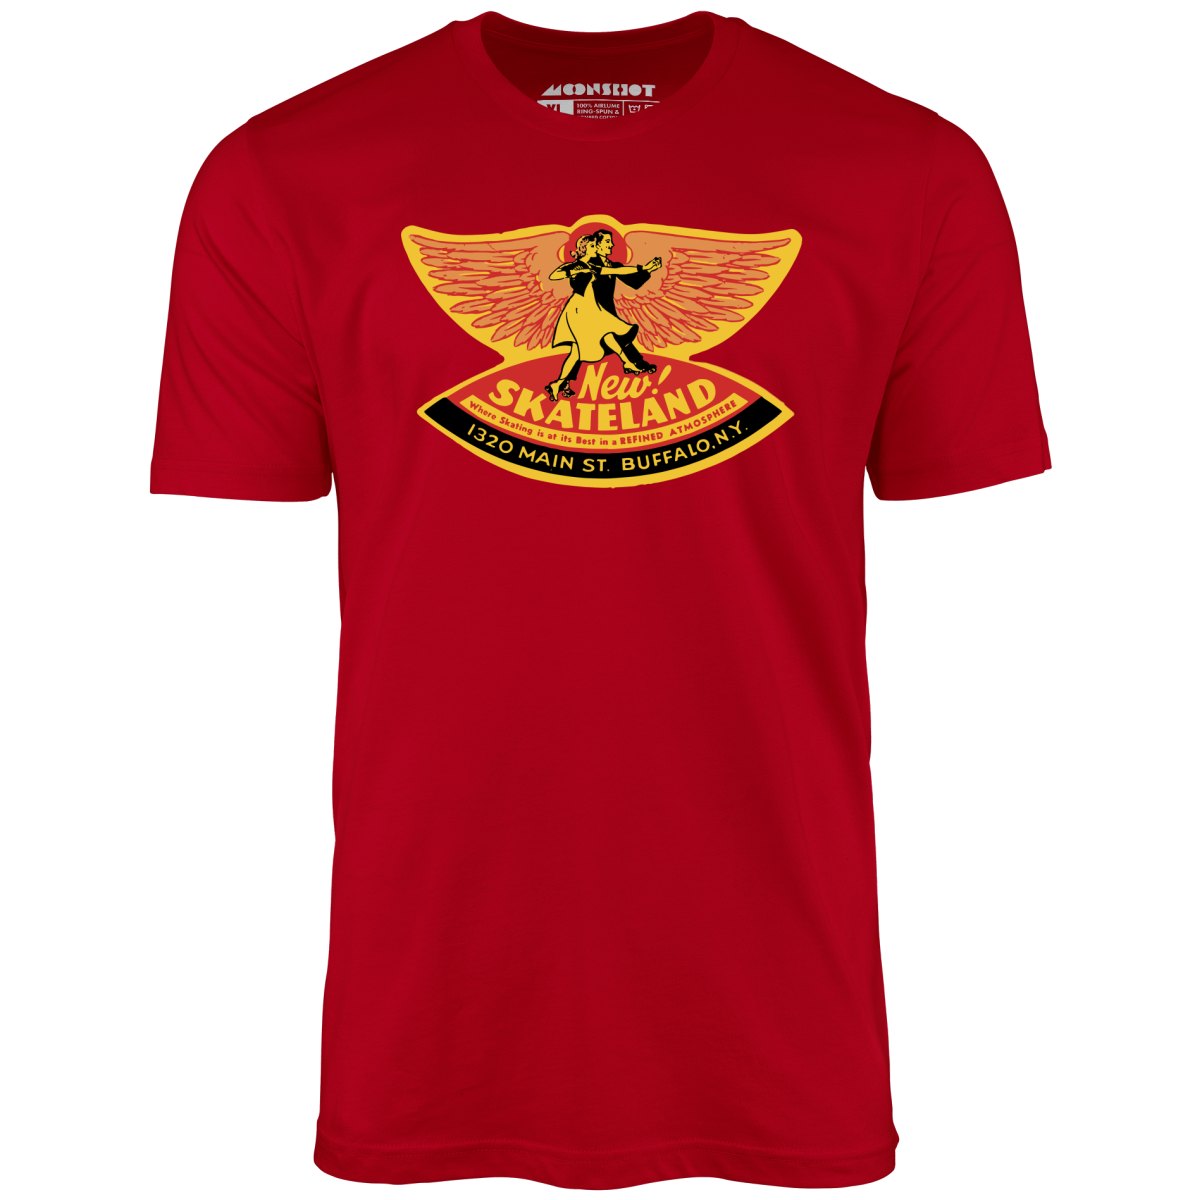 New Skateland - Buffalo, NY - Vintage Roller Rink - Unisex T-Shirt